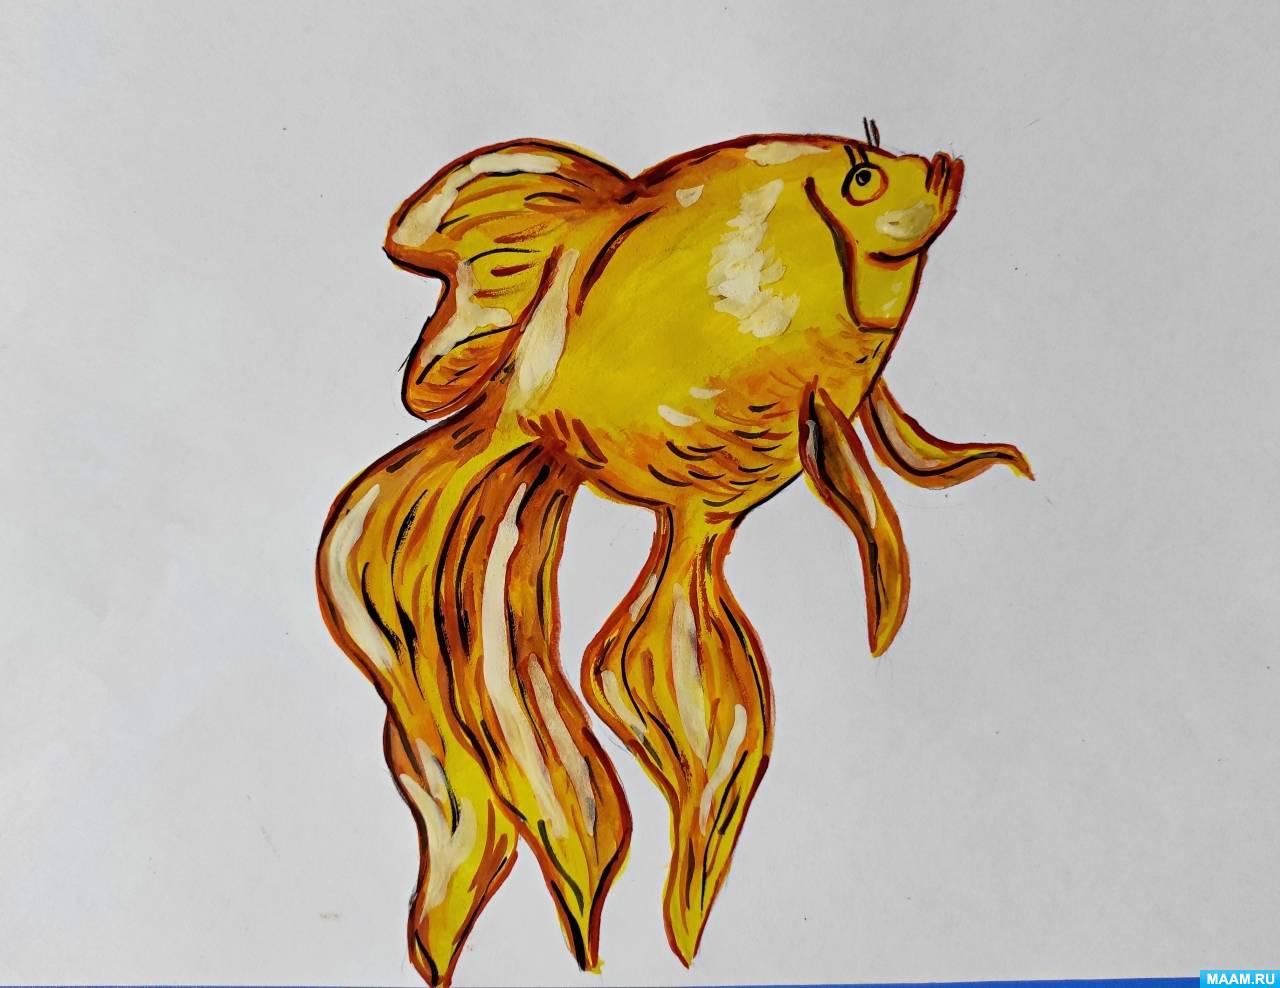 Мастер-класс по рисованию простым карандашом и гуашью «Золотая рыбка» с детьми старшего дошкольного возраста